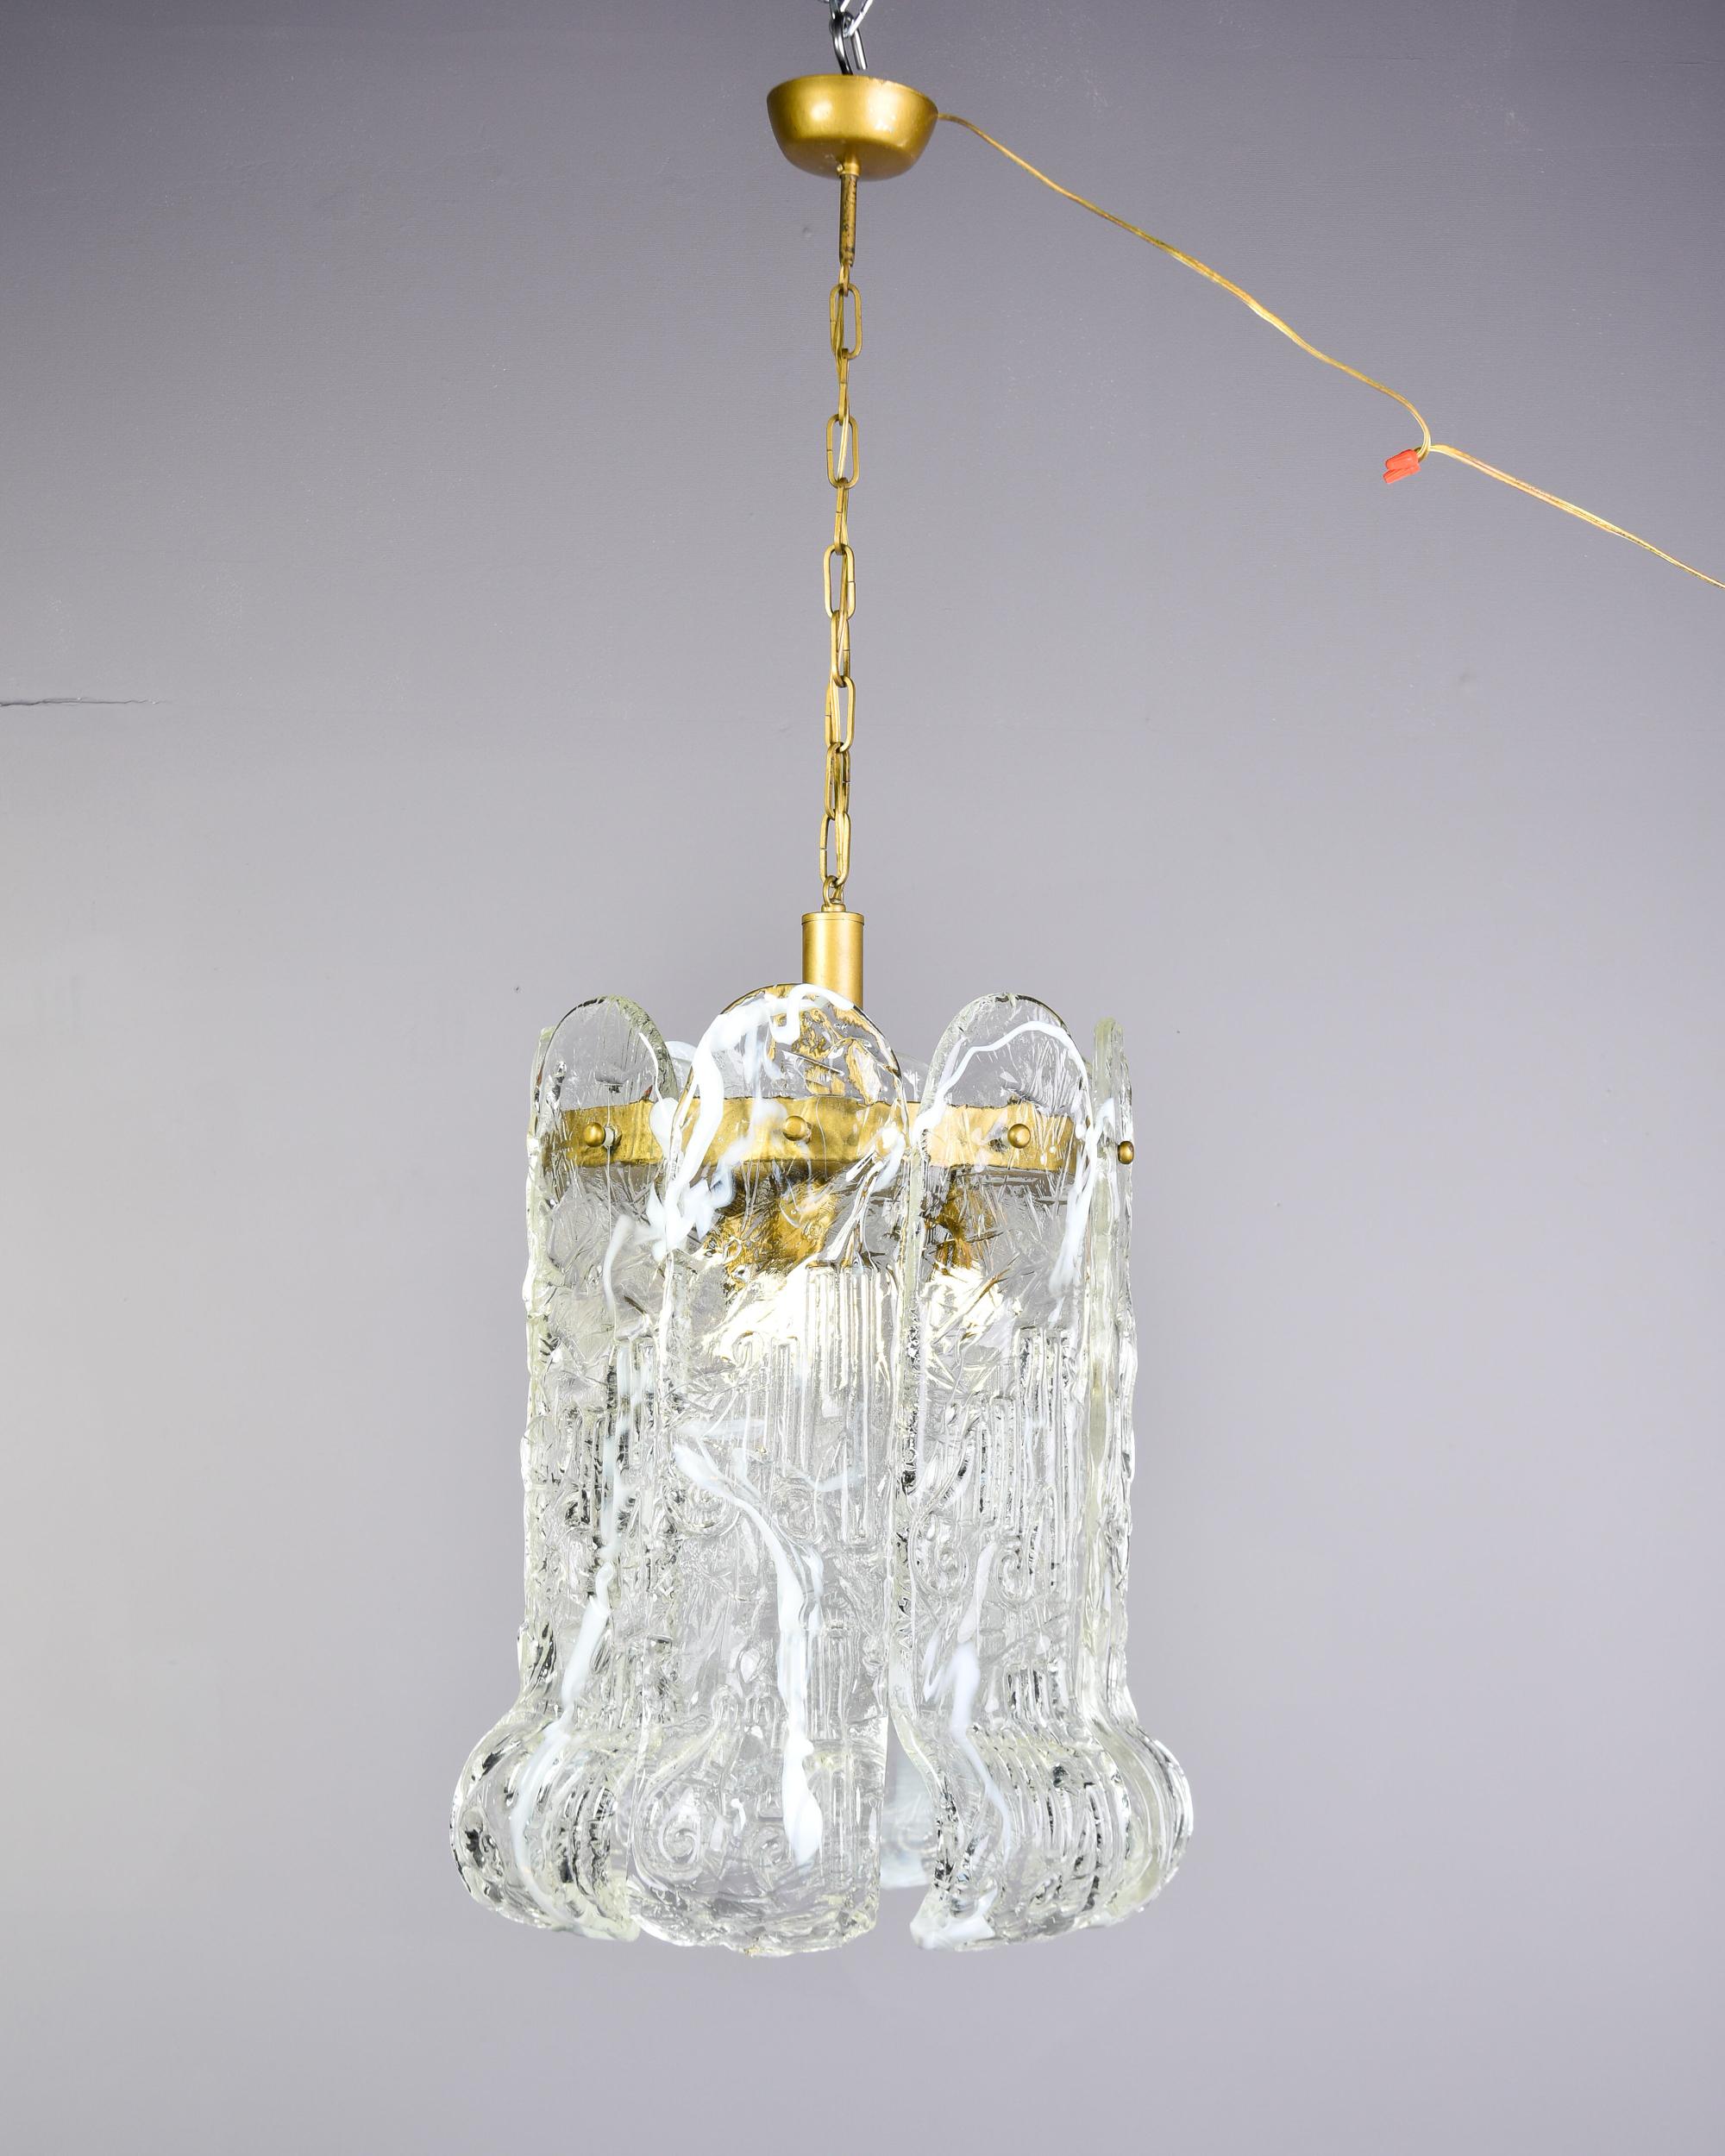 Trouvée en Italie, cette suspension en verre de Murano attribuée à Mazzega date du début des années 1970. Ce luminaire est composé d'un cadre en laiton et de huit grandes pampilles en verre soufflé transparent qui se recourbent aux extrémités. Les